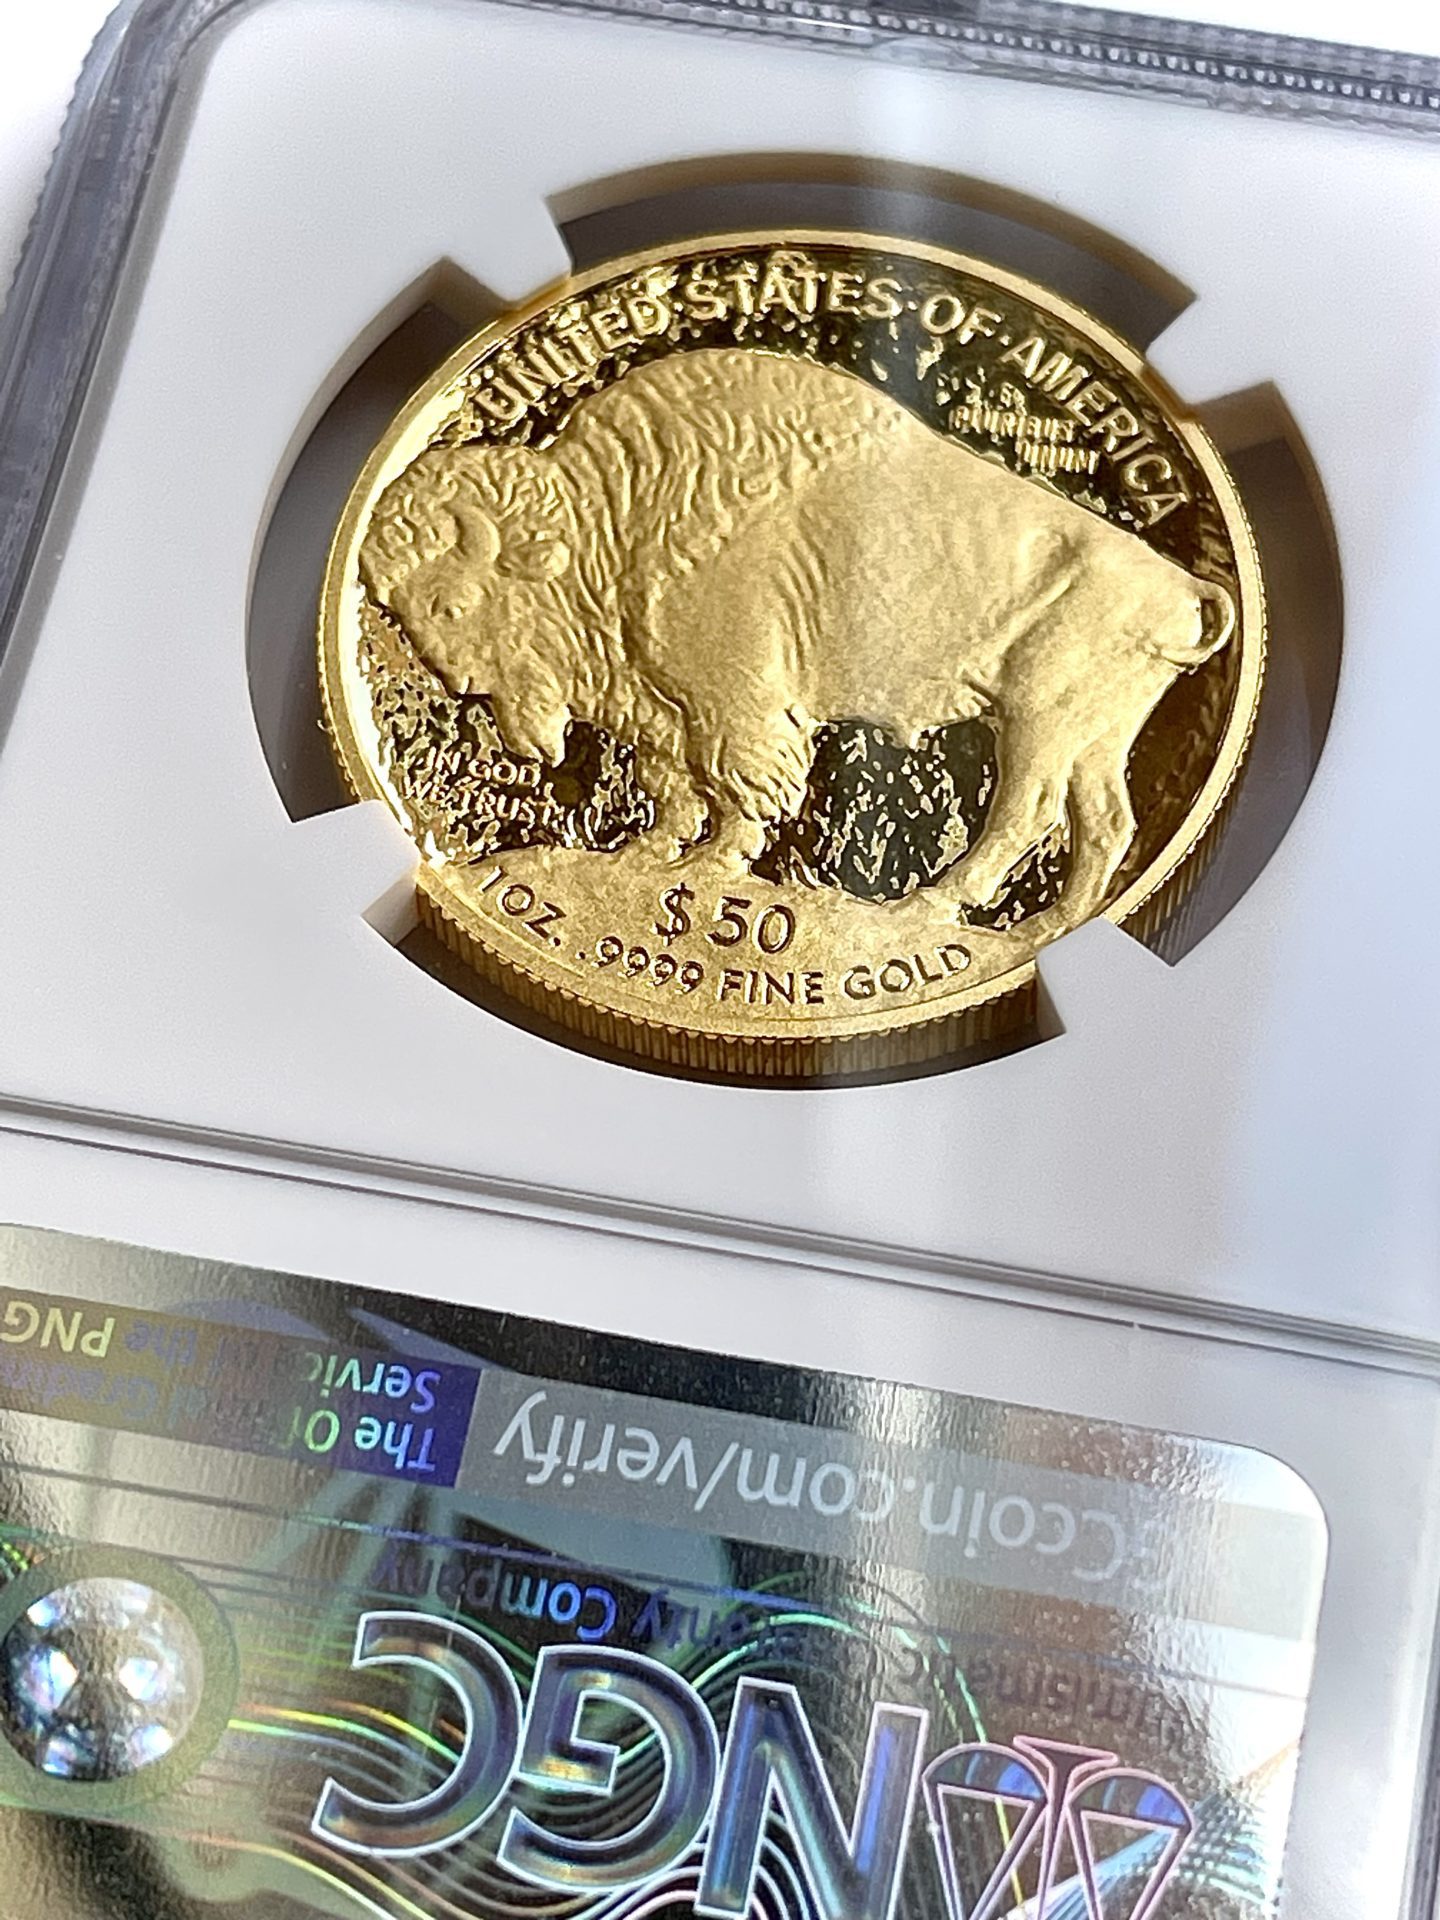 USA American buffalo gold 2009 proof 1oz NGC pf70 ultra cameo